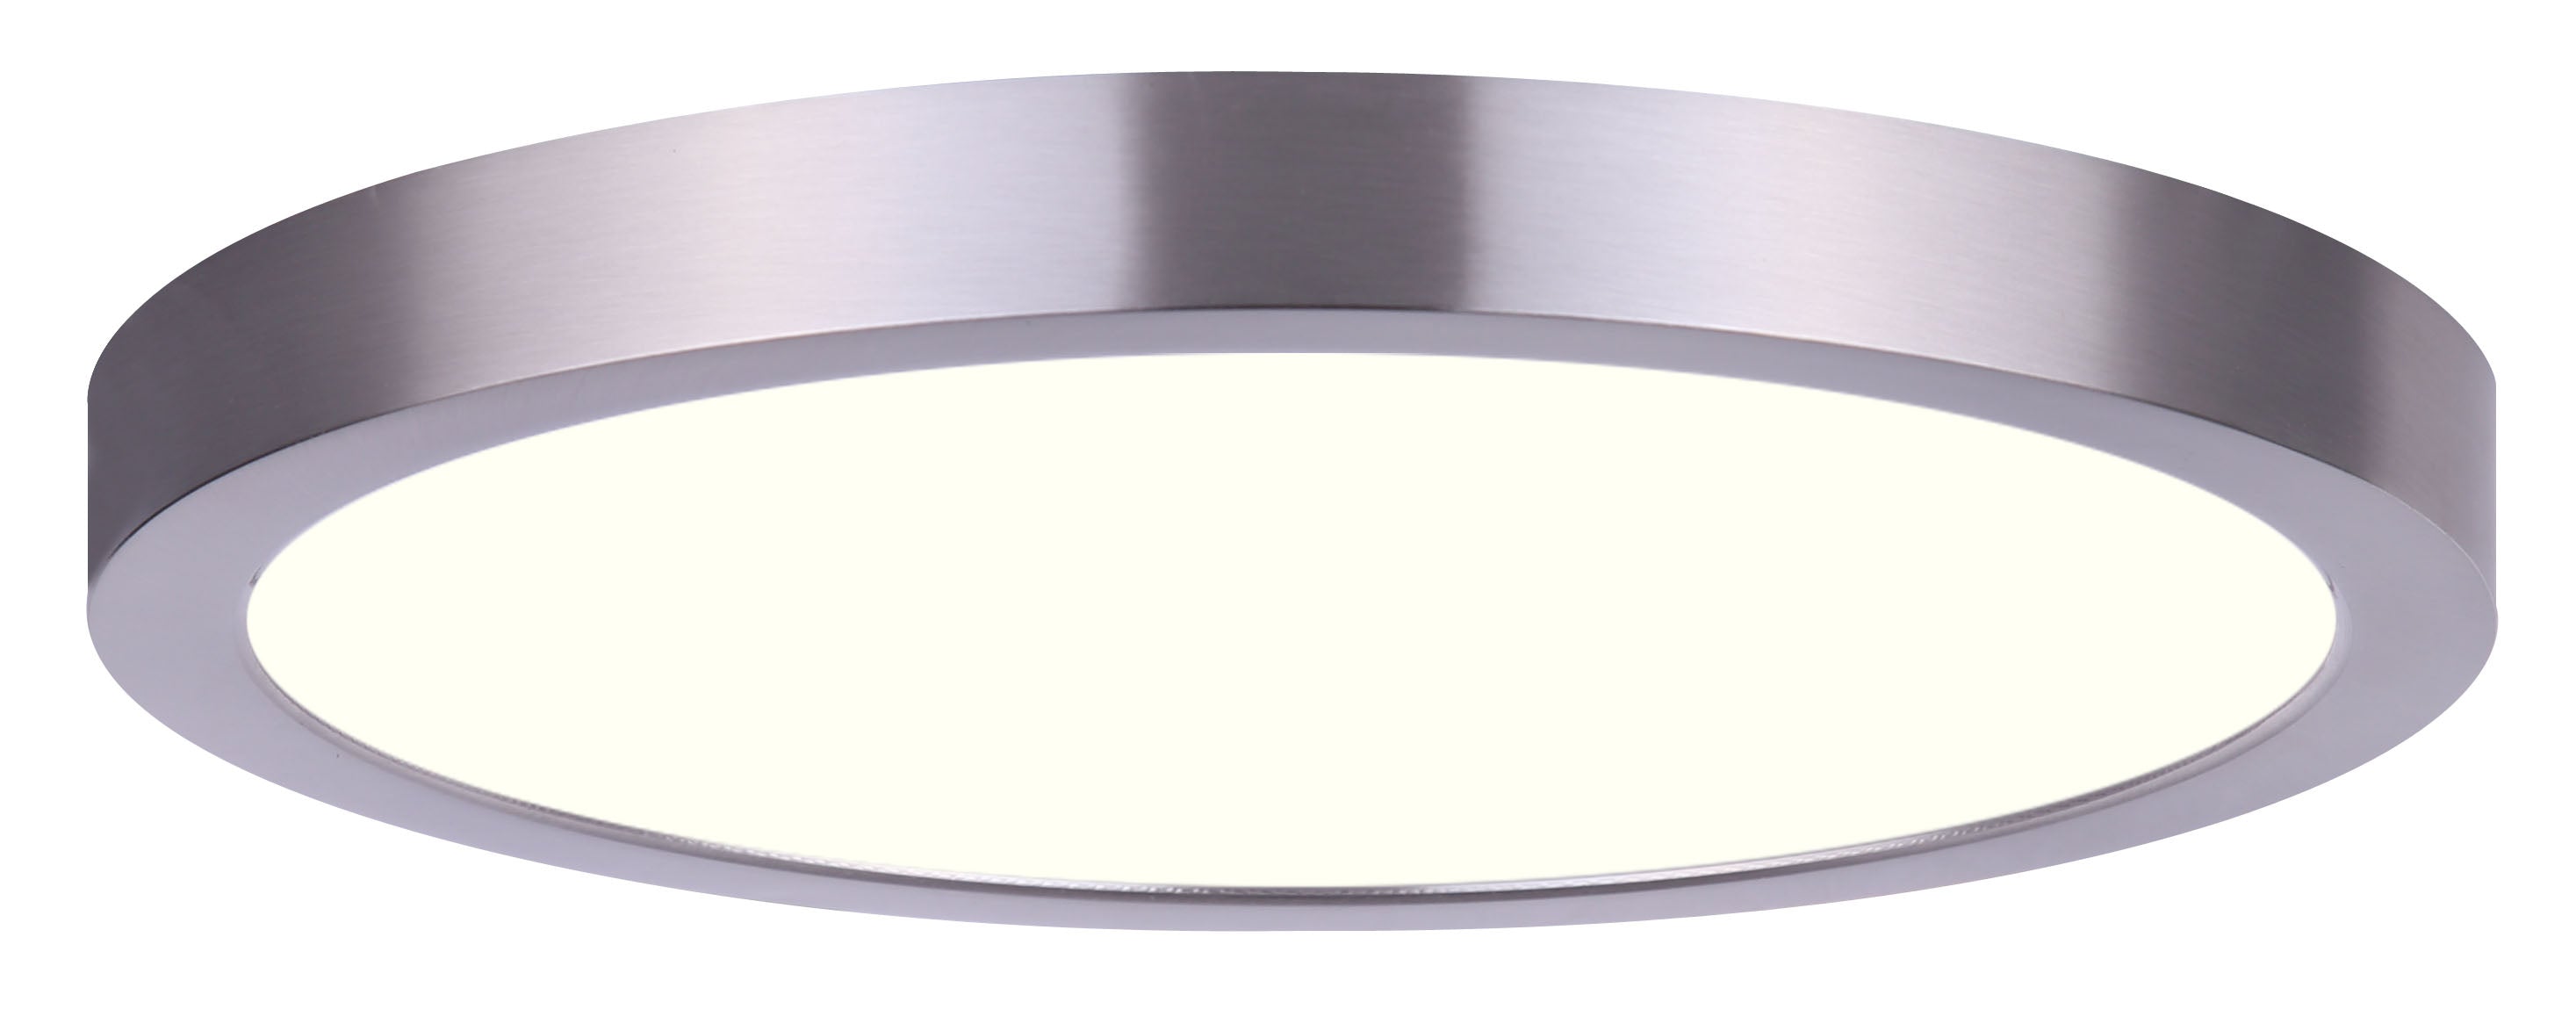 LED ROUND DISK Plafonnier Nickel - DL-7F-15S-BN-C | CANARM